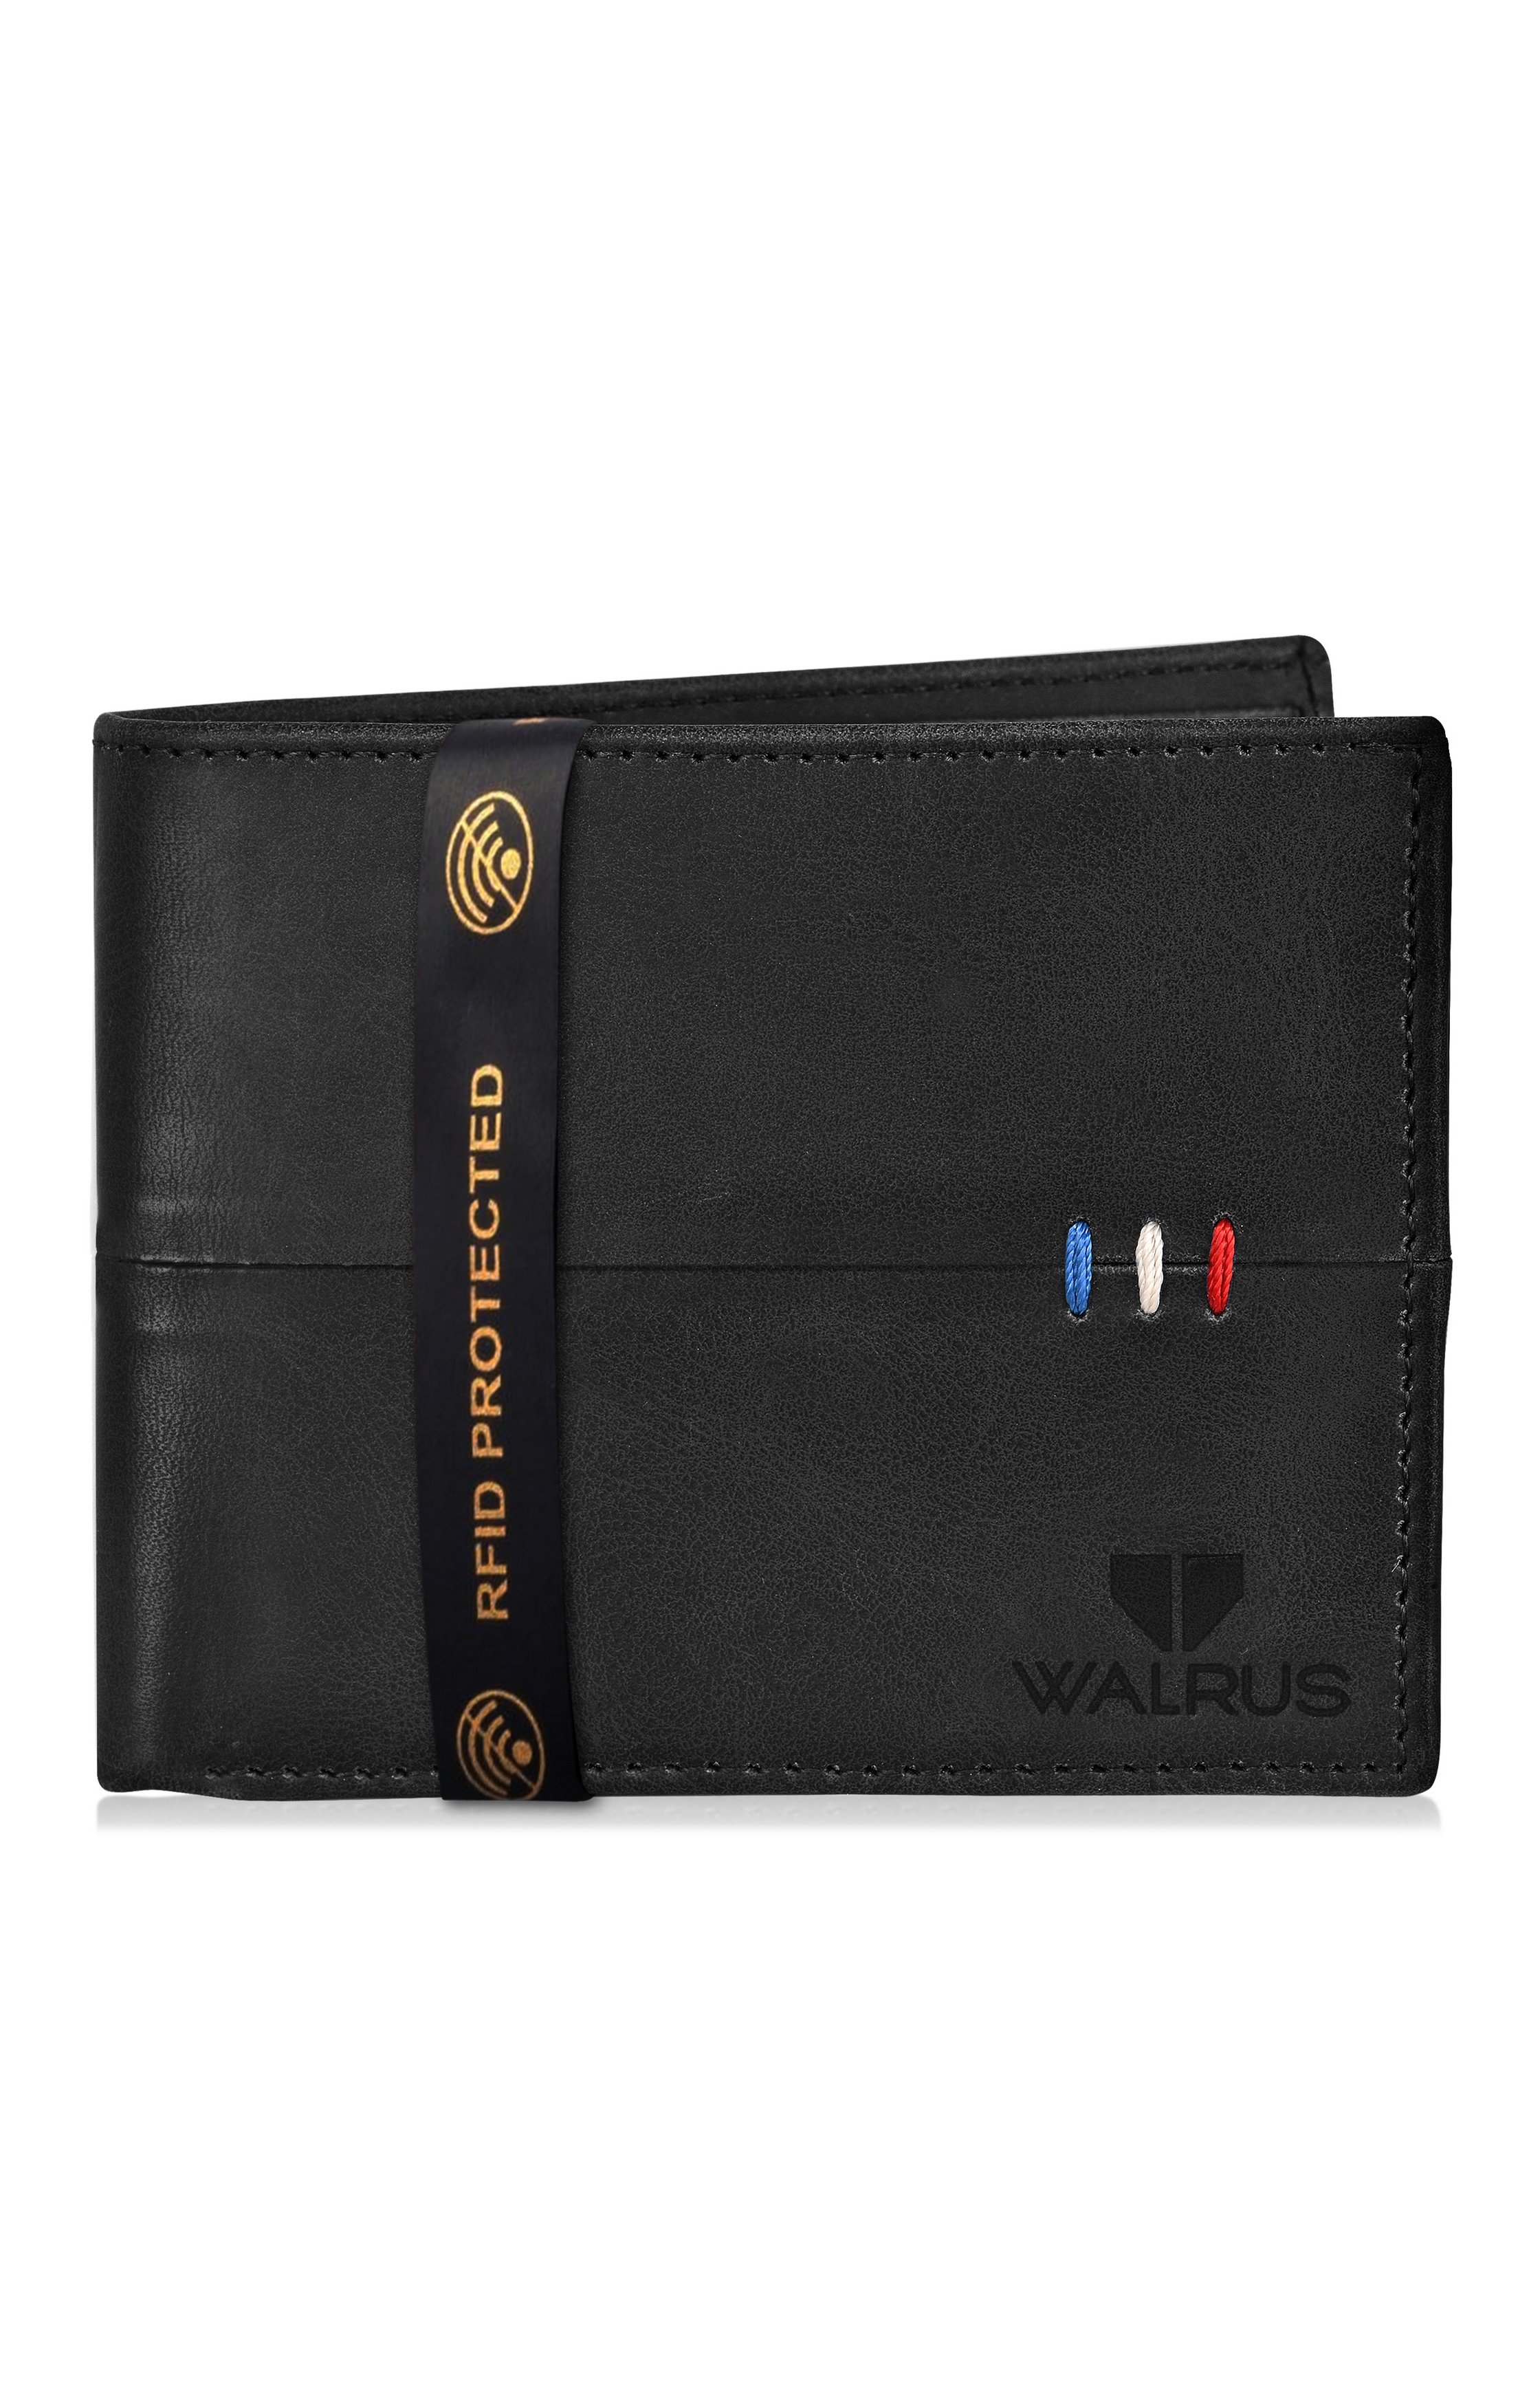 Walrus | Black Wallet